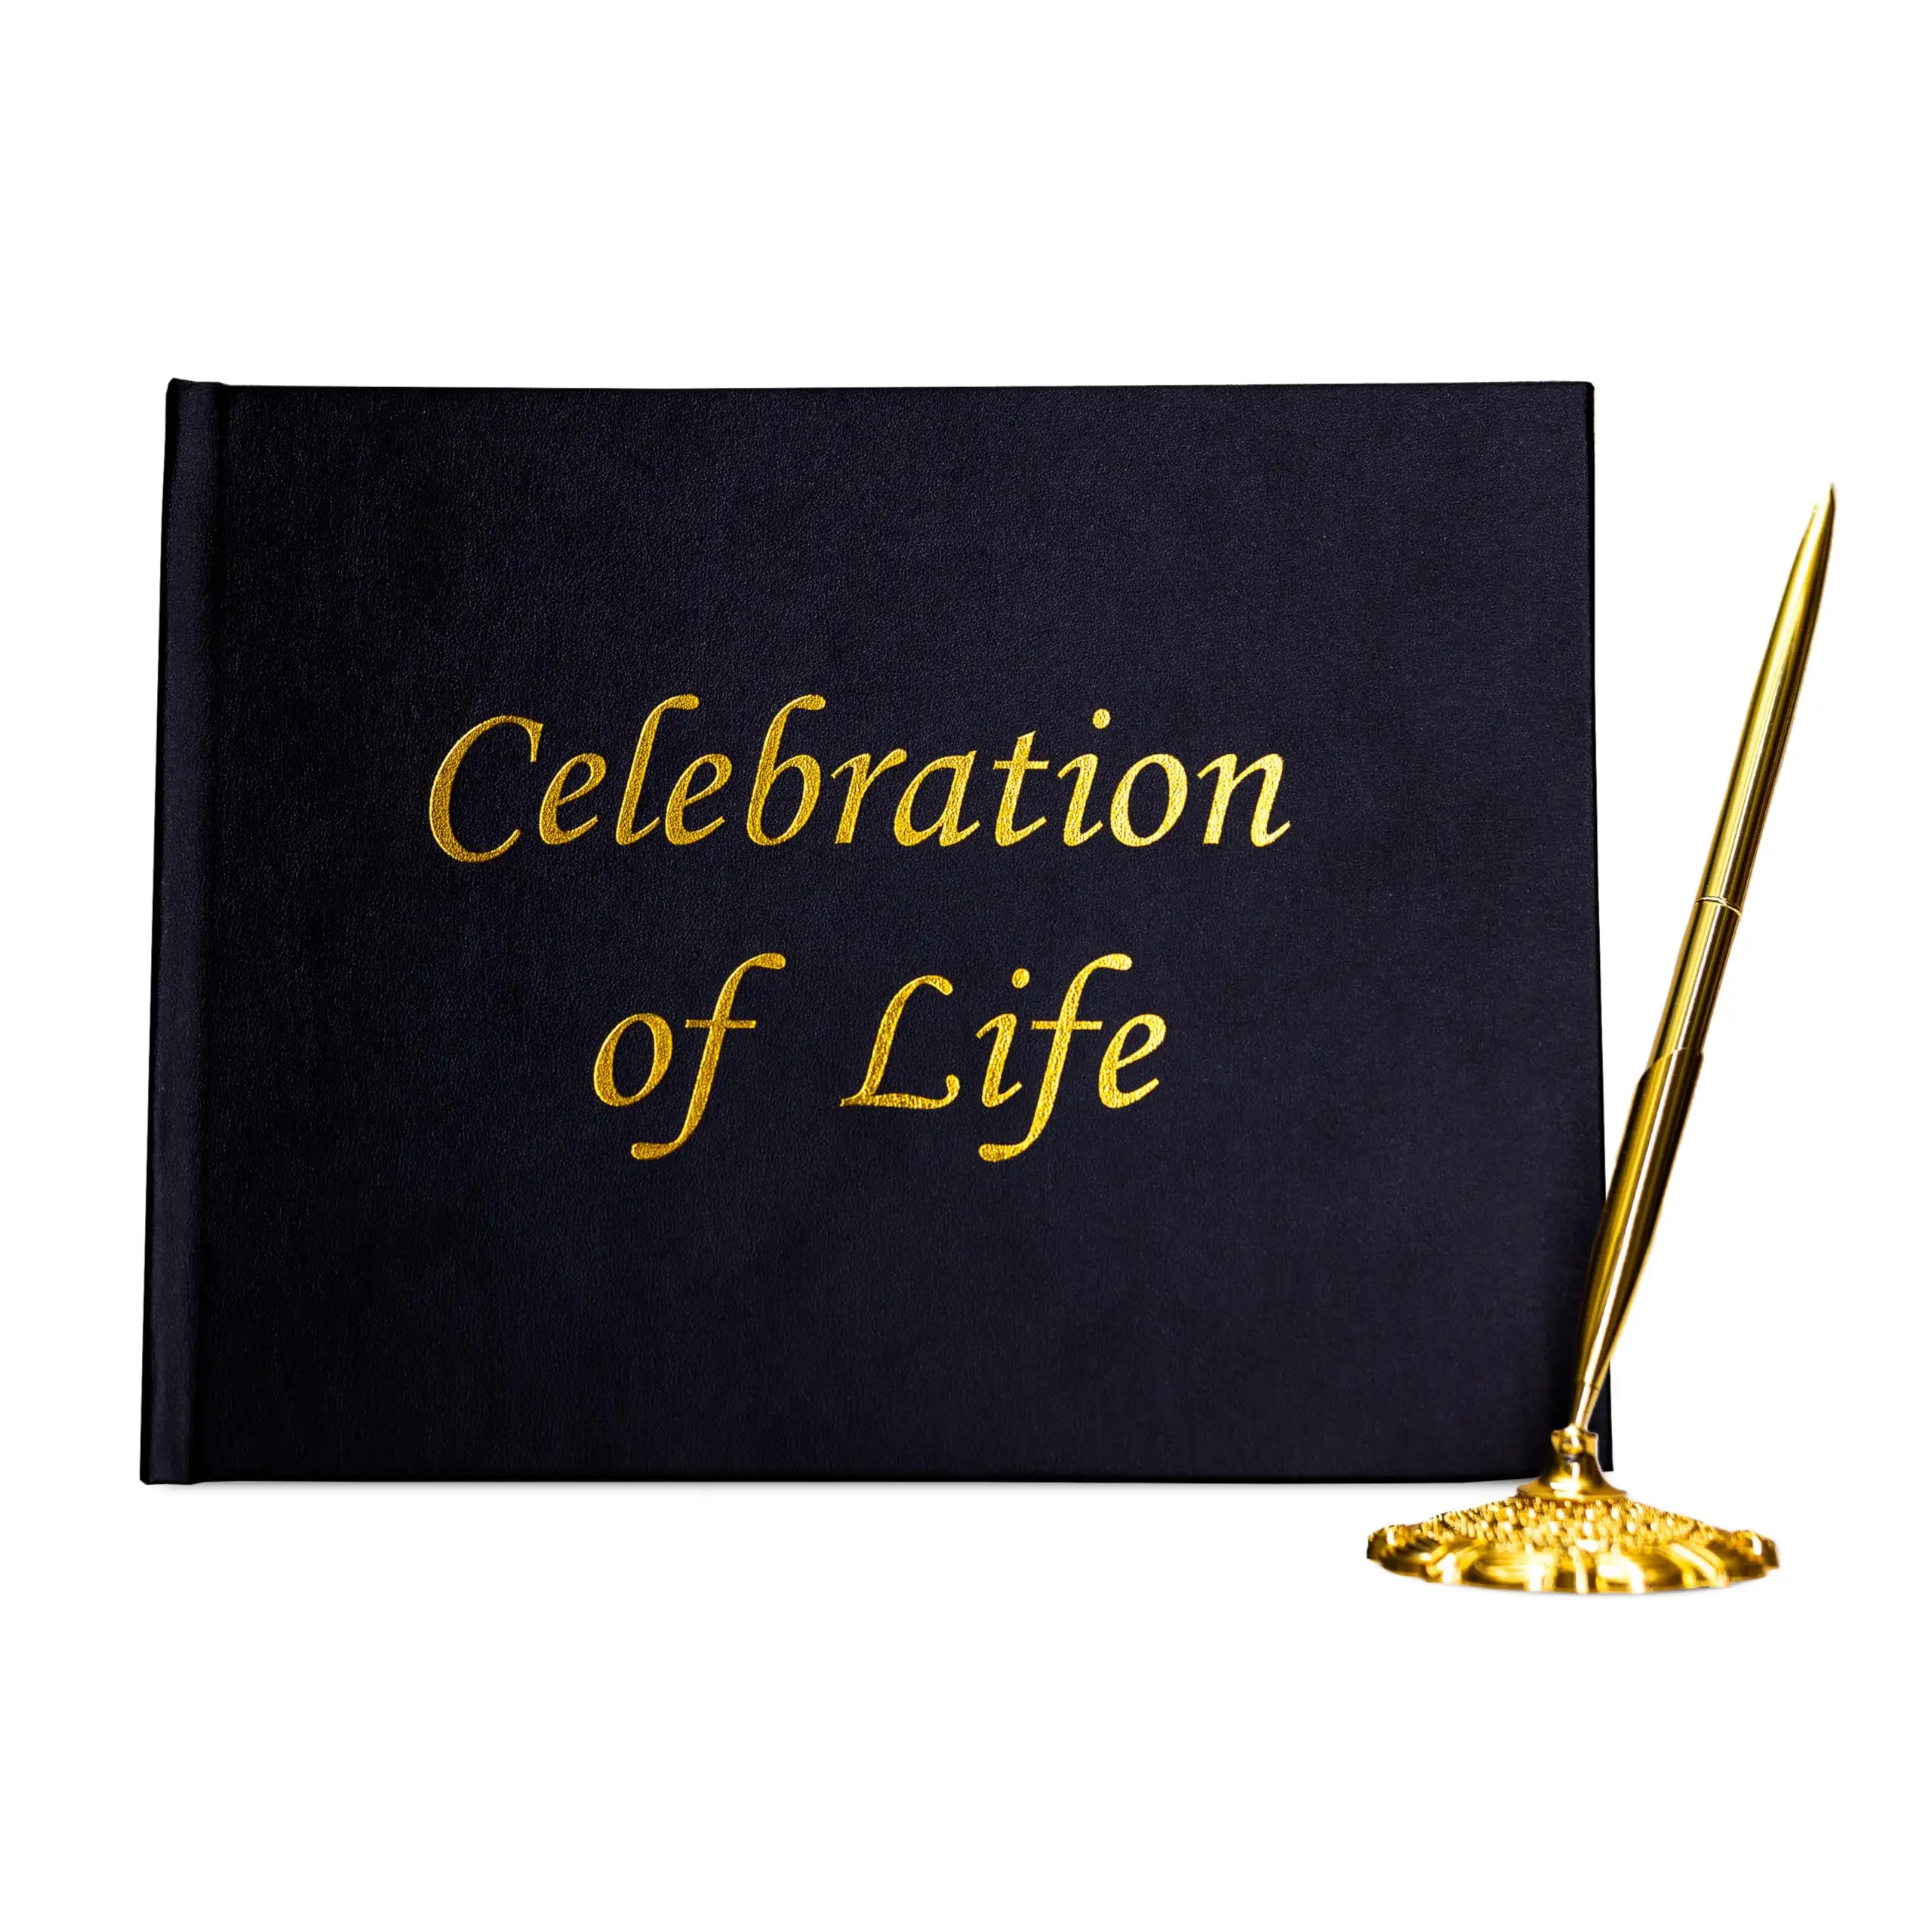 Foil emas bermata Premium perayaan kehidupan masuk di buku sampul keras kulit buku tamu pemakaman dengan pena